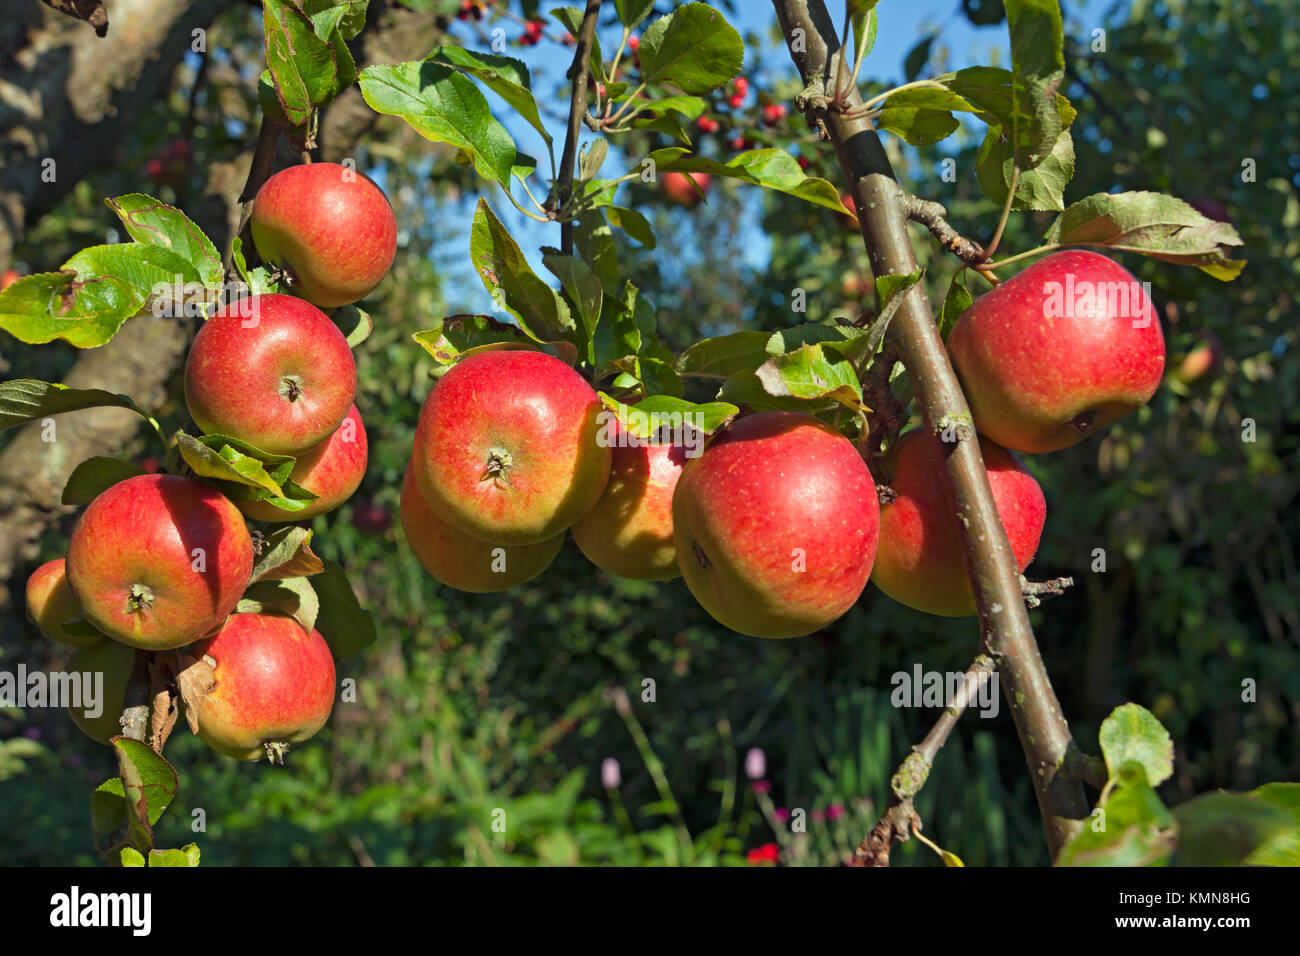 Primo piano di Charles Ross mele mele frutta frutta frutta crescere su un albero in un giardino frutteto in autunno Inghilterra Regno Unito Gran Bretagna Foto Stock